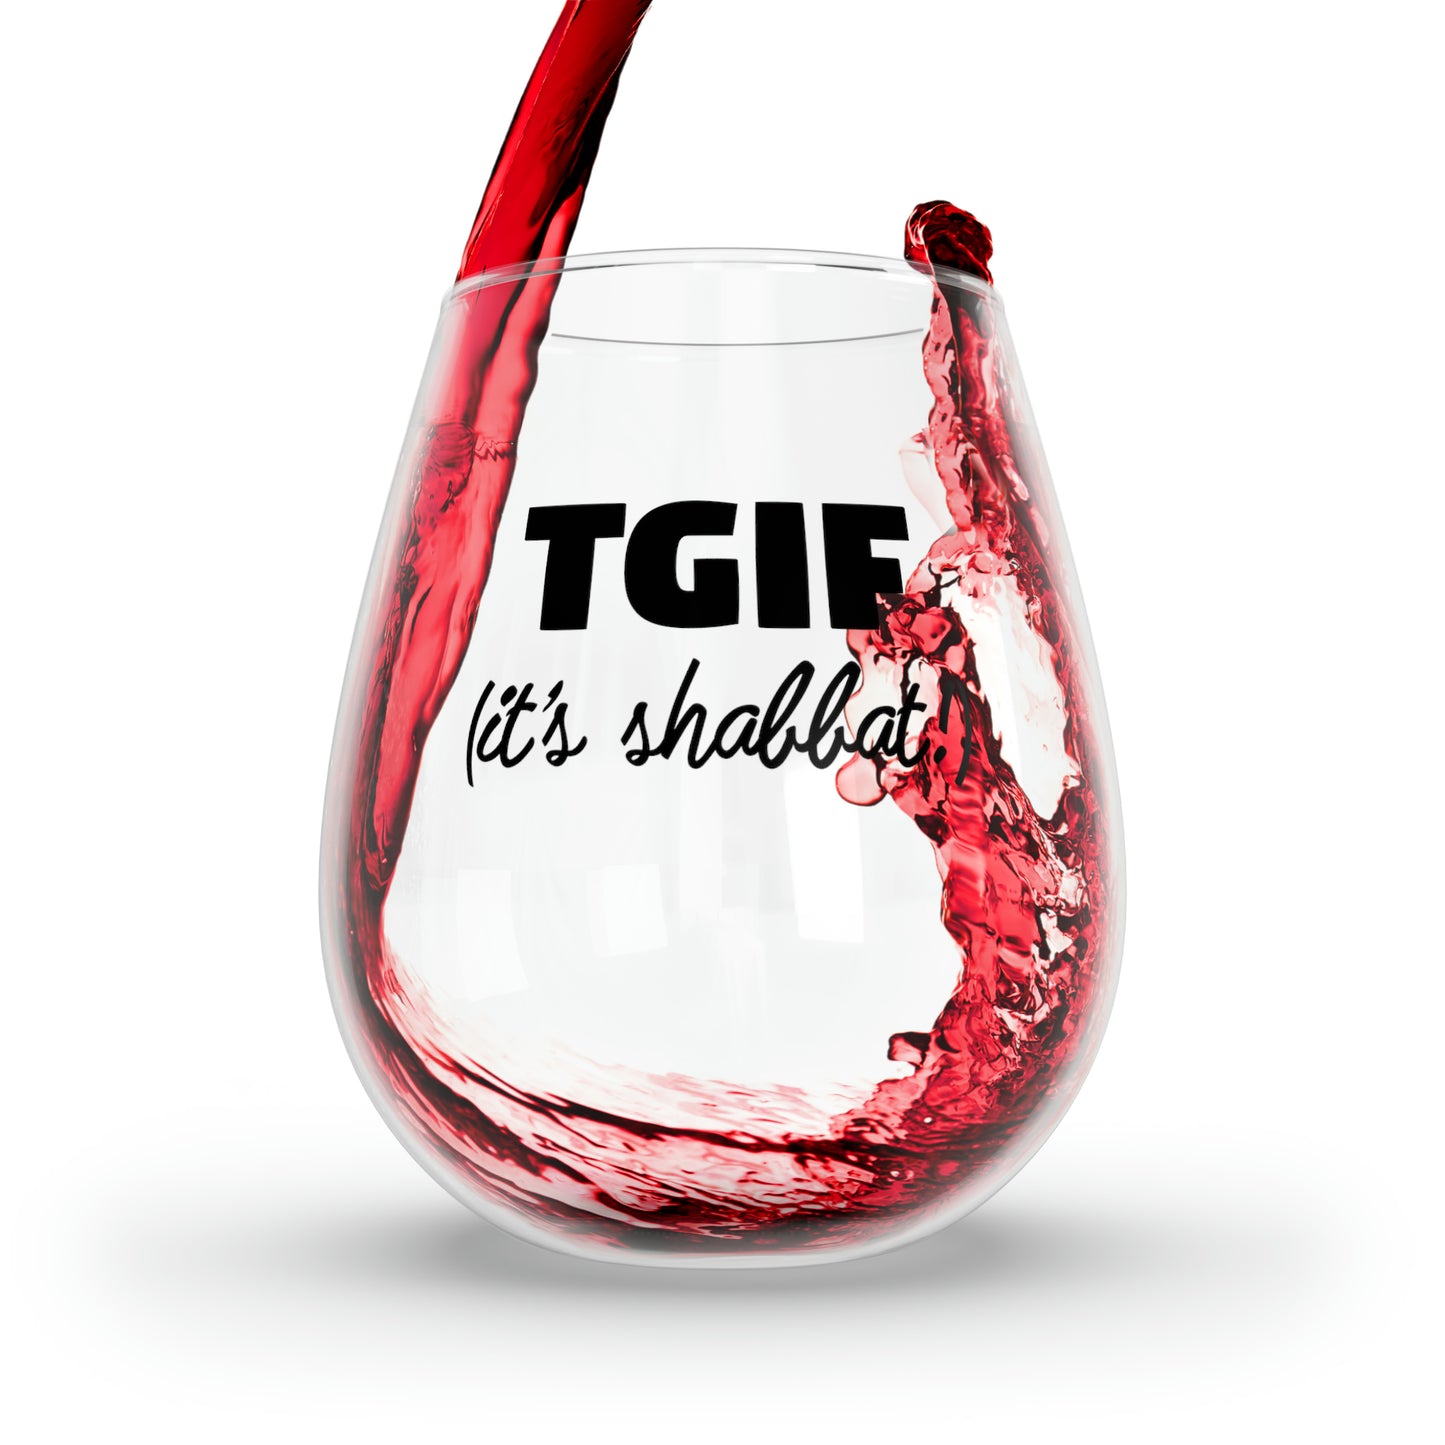 tgif images wine